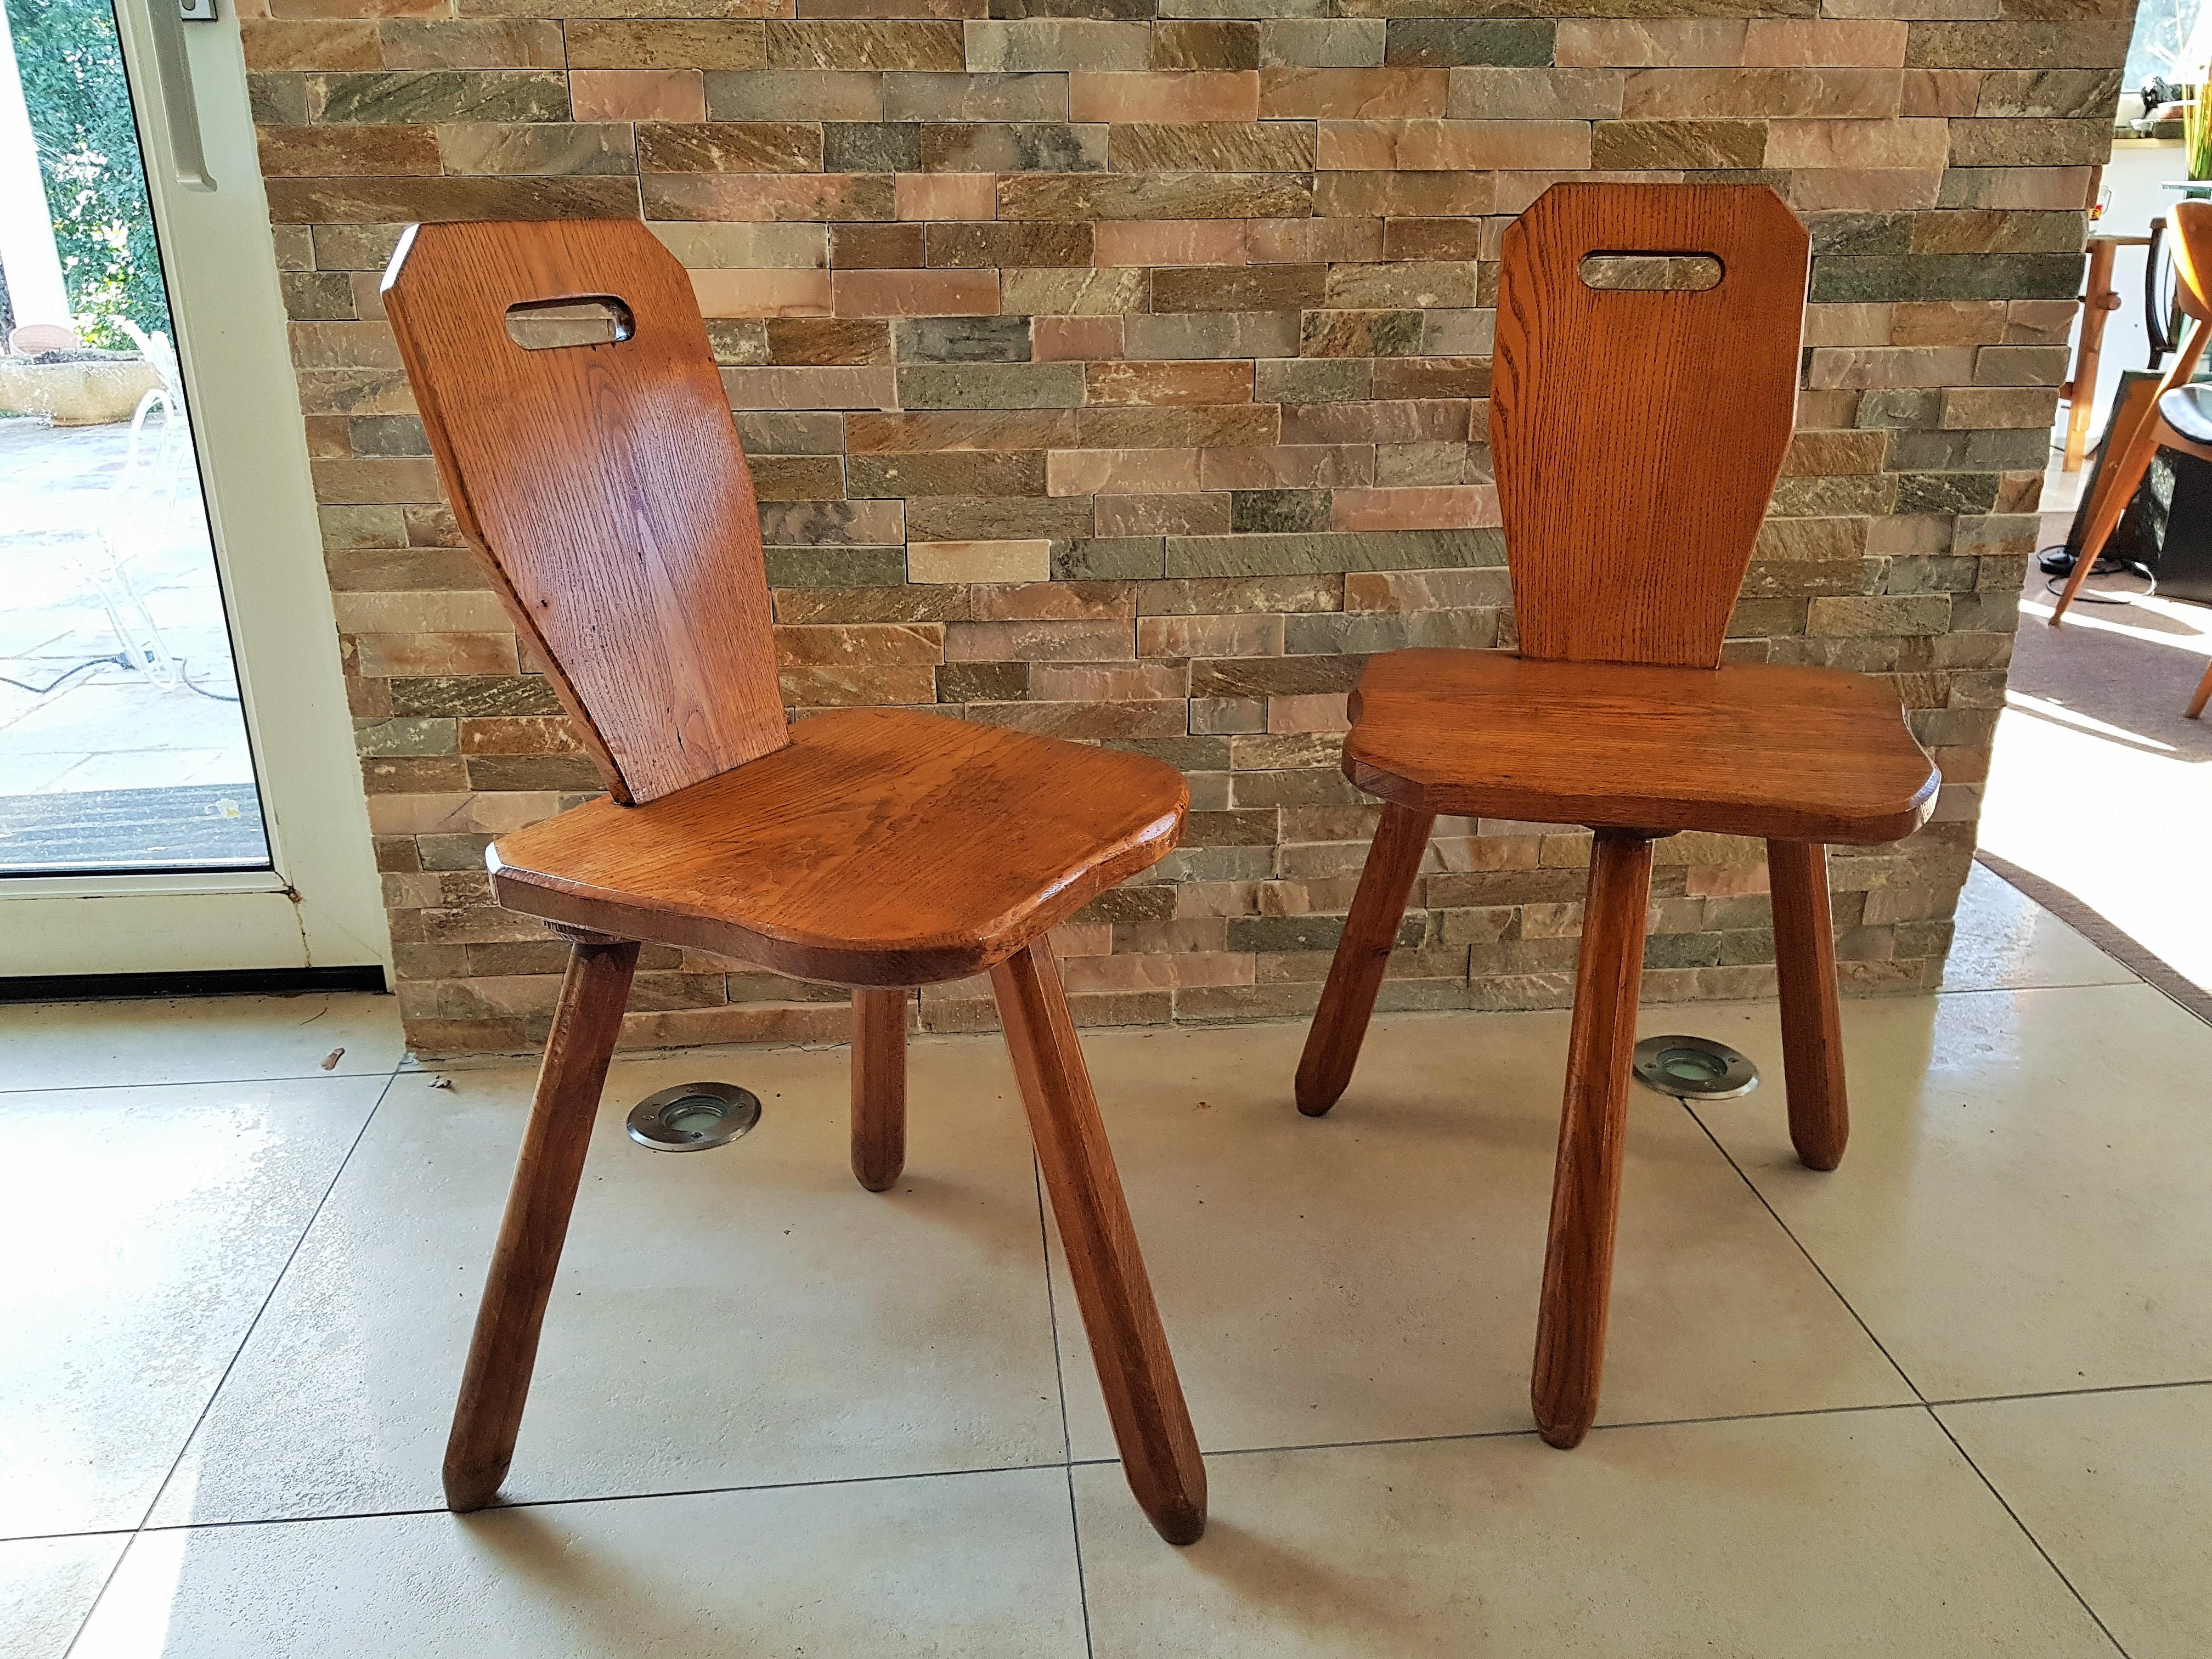 Paar Stühle oder Hocker aus der Mitte des Jahrhunderts, Charlotte Perriand zugeschrieben, dem Hersteller Les Arcs, Frankreich, 1950er Jahre. In sehr gutem Vintage-Zustand. Solide und stabil.
rustikales, minimalistisches Design.

